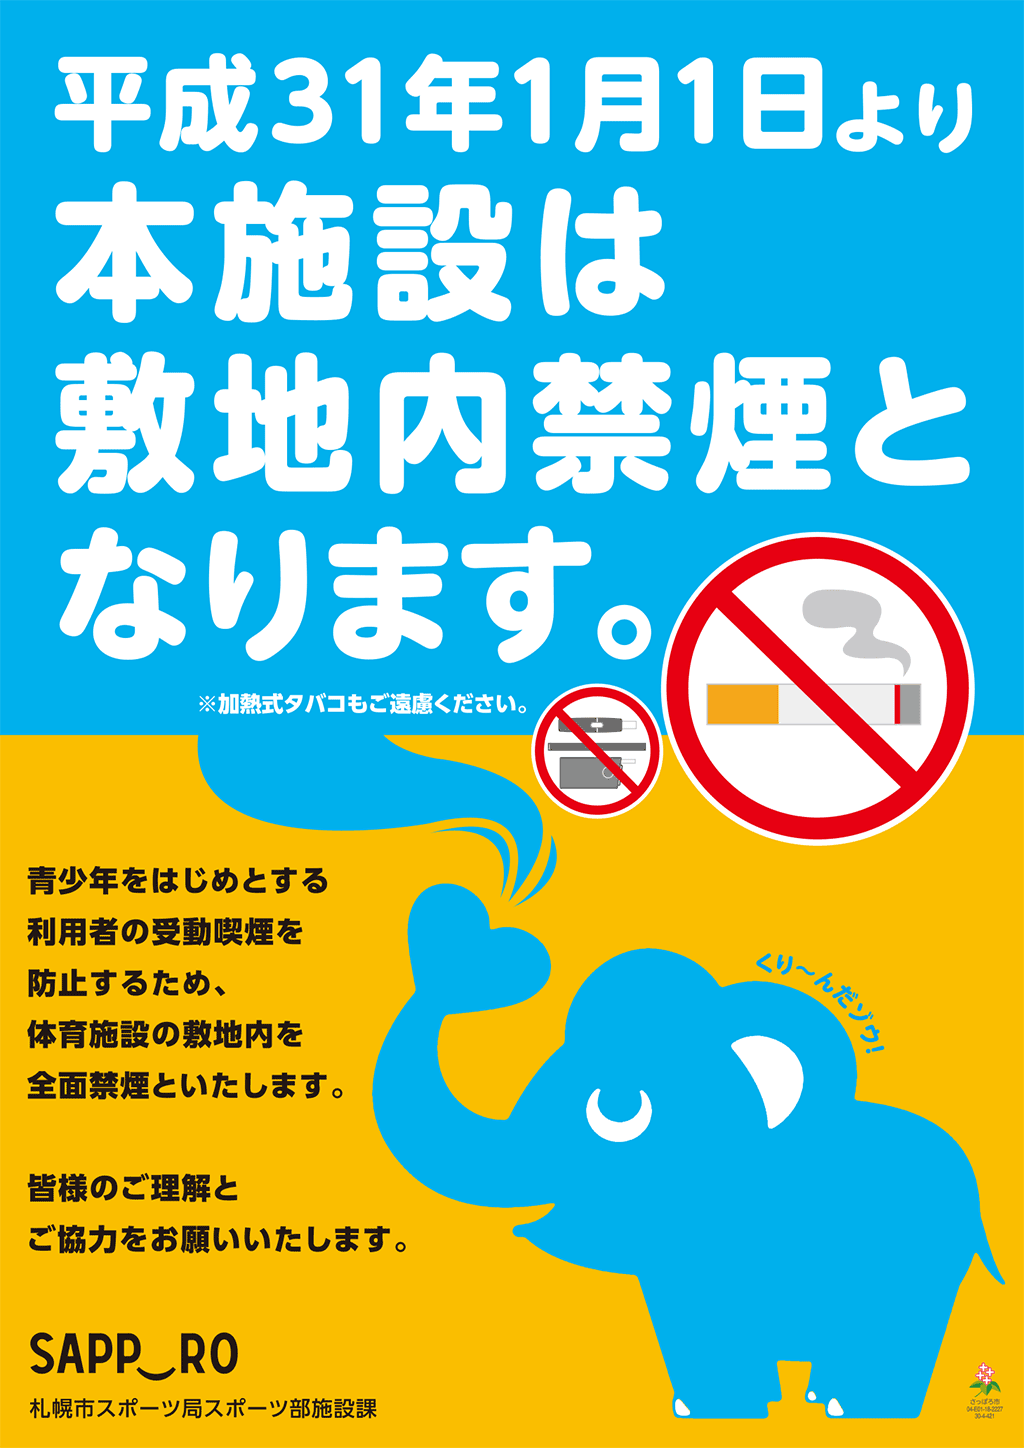 平成31年1月1日より本施設は敷地内禁煙となります。